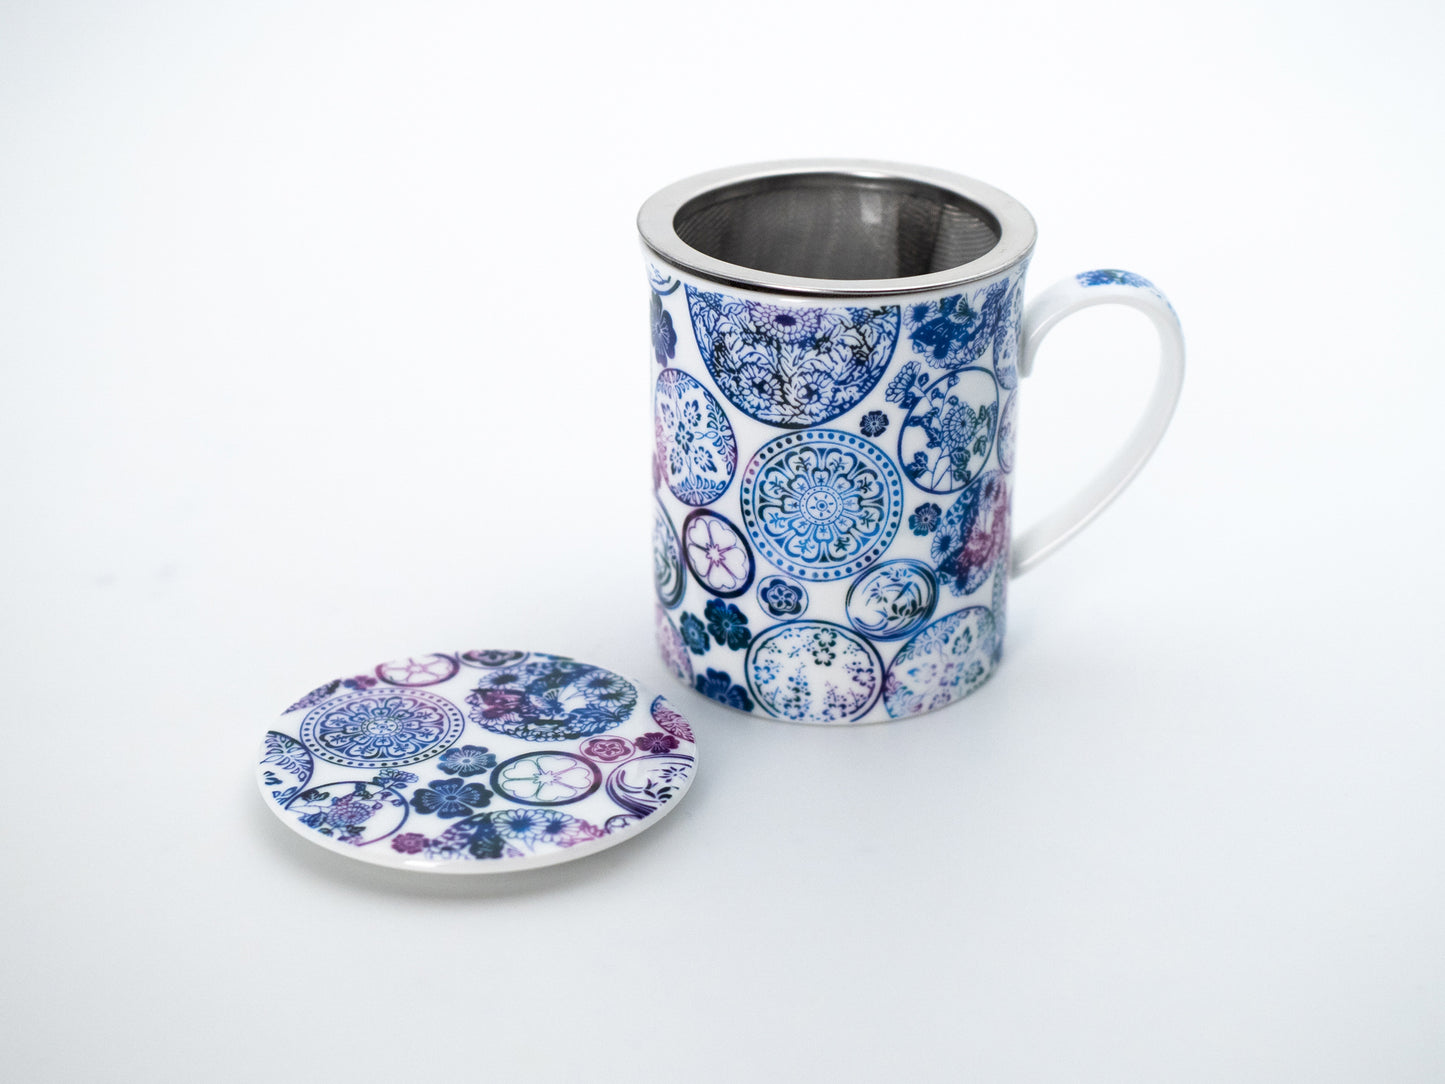 Blue mandala porcelain infuser mug and stainless steel infuser basket stand next its porcelain lid